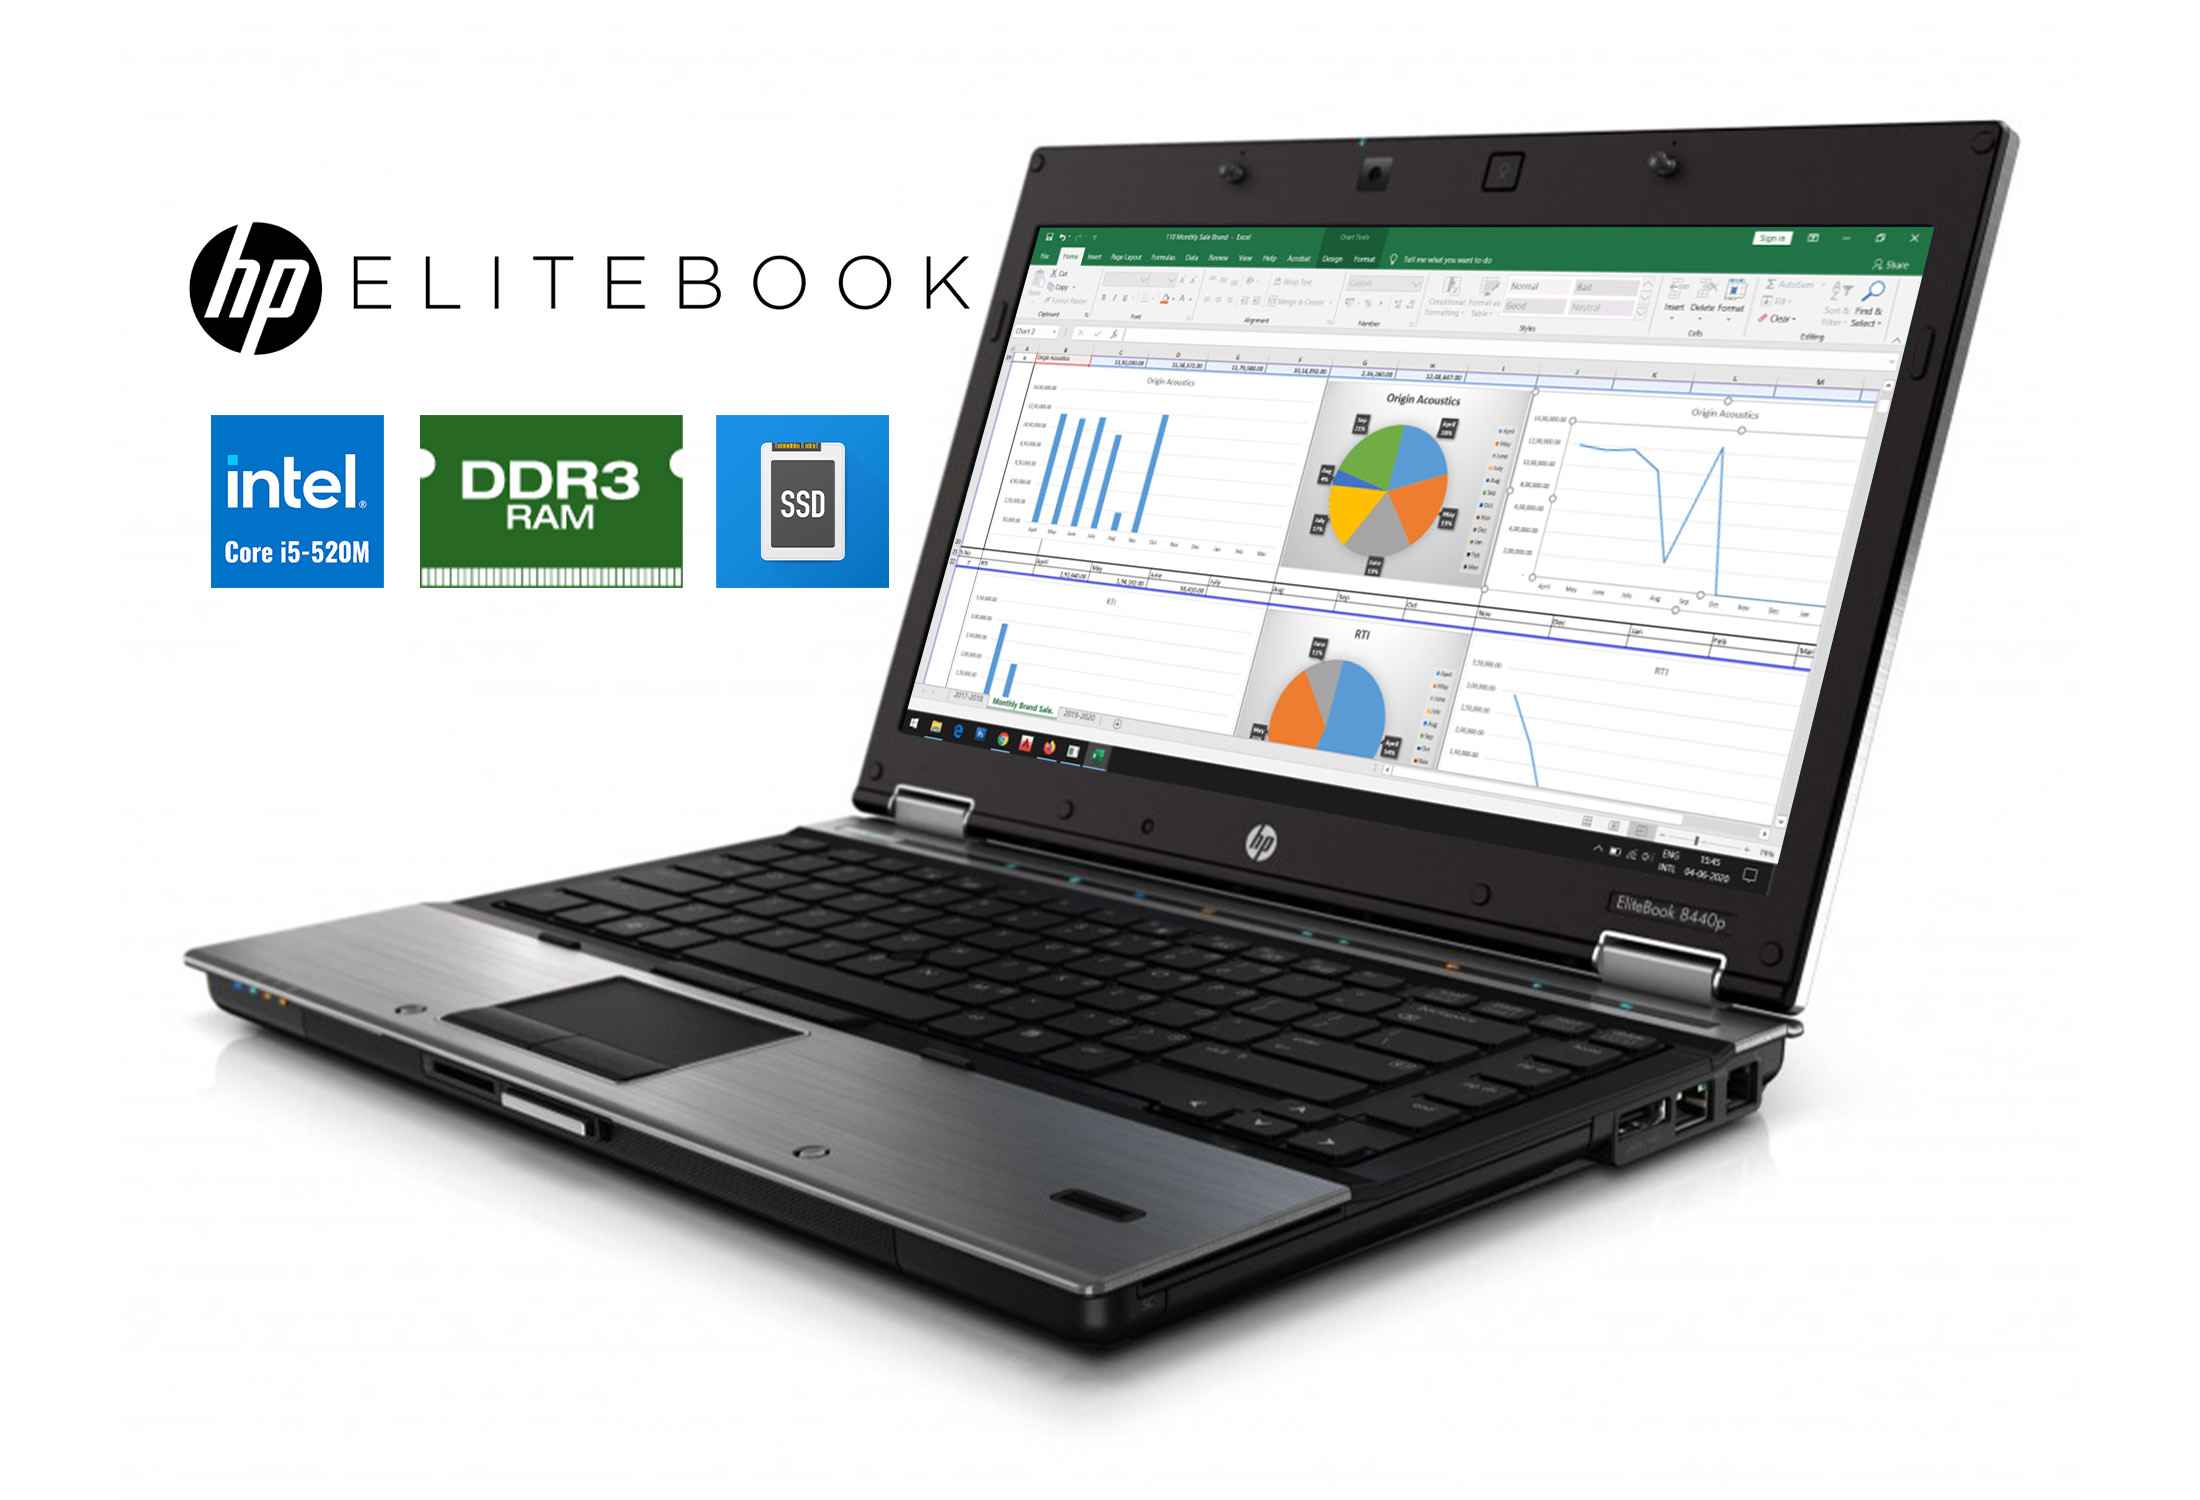 HP EliteBook 8440p core i5-520M DDR3 SSD 1600x900-CcoKZ.jpeg